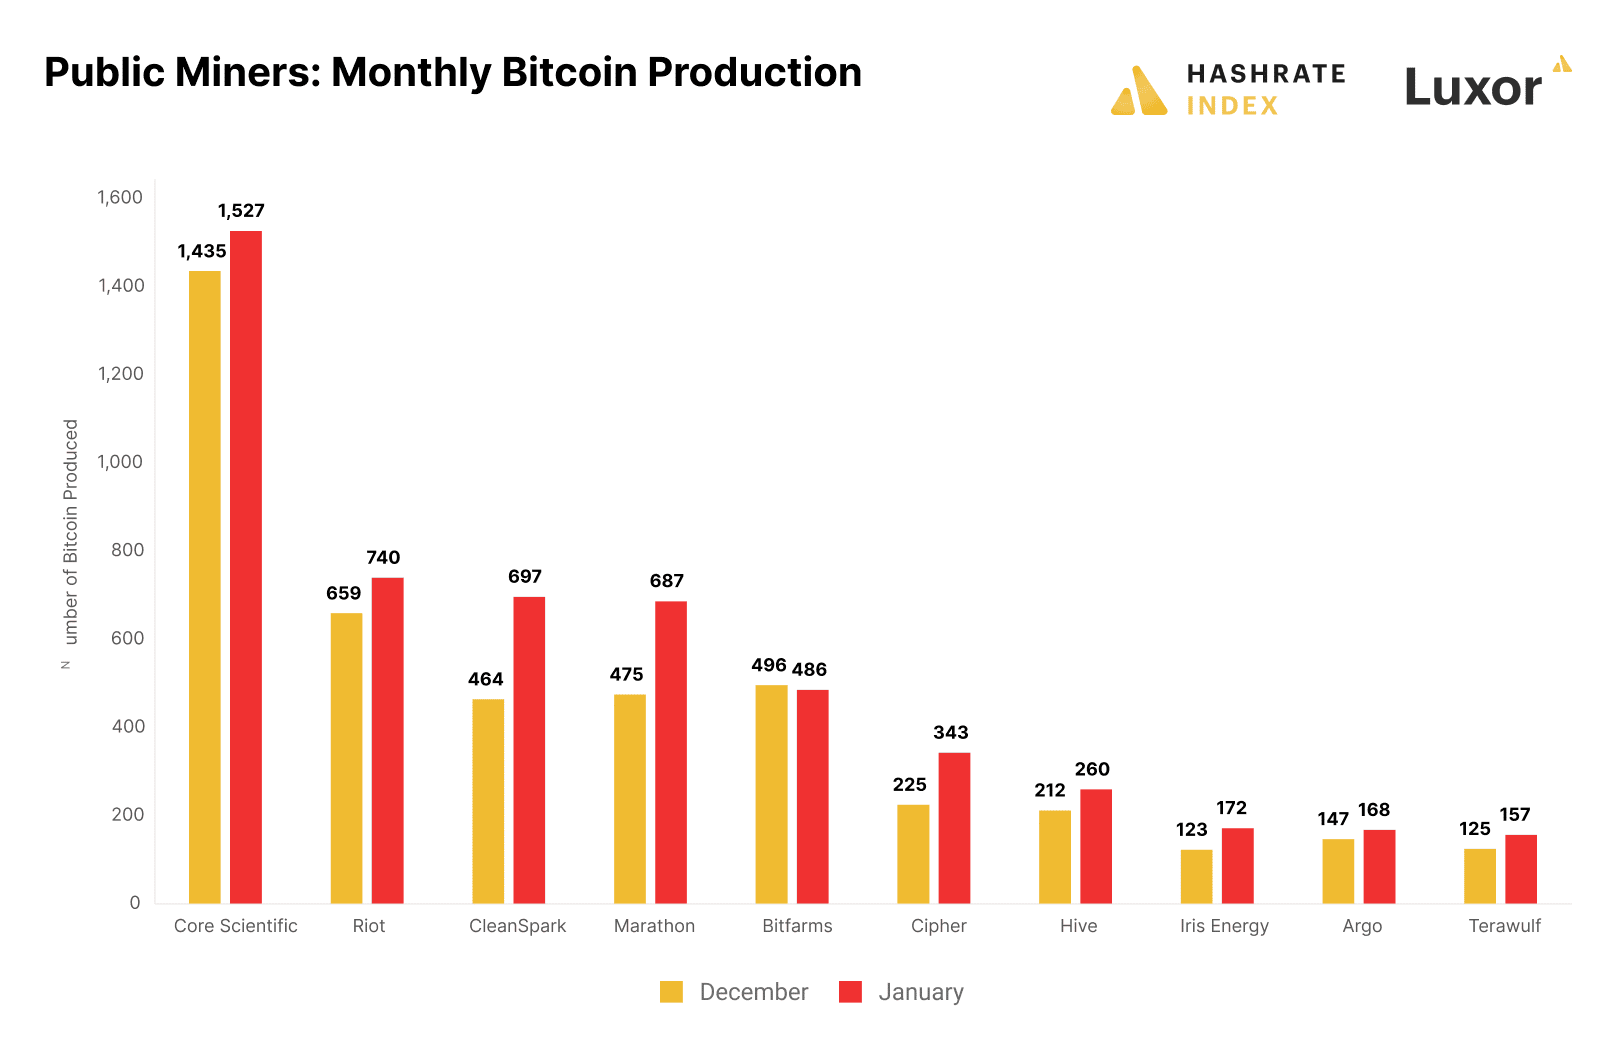 Mineros públicos de Bitcoin producción mensual de Bitcoin